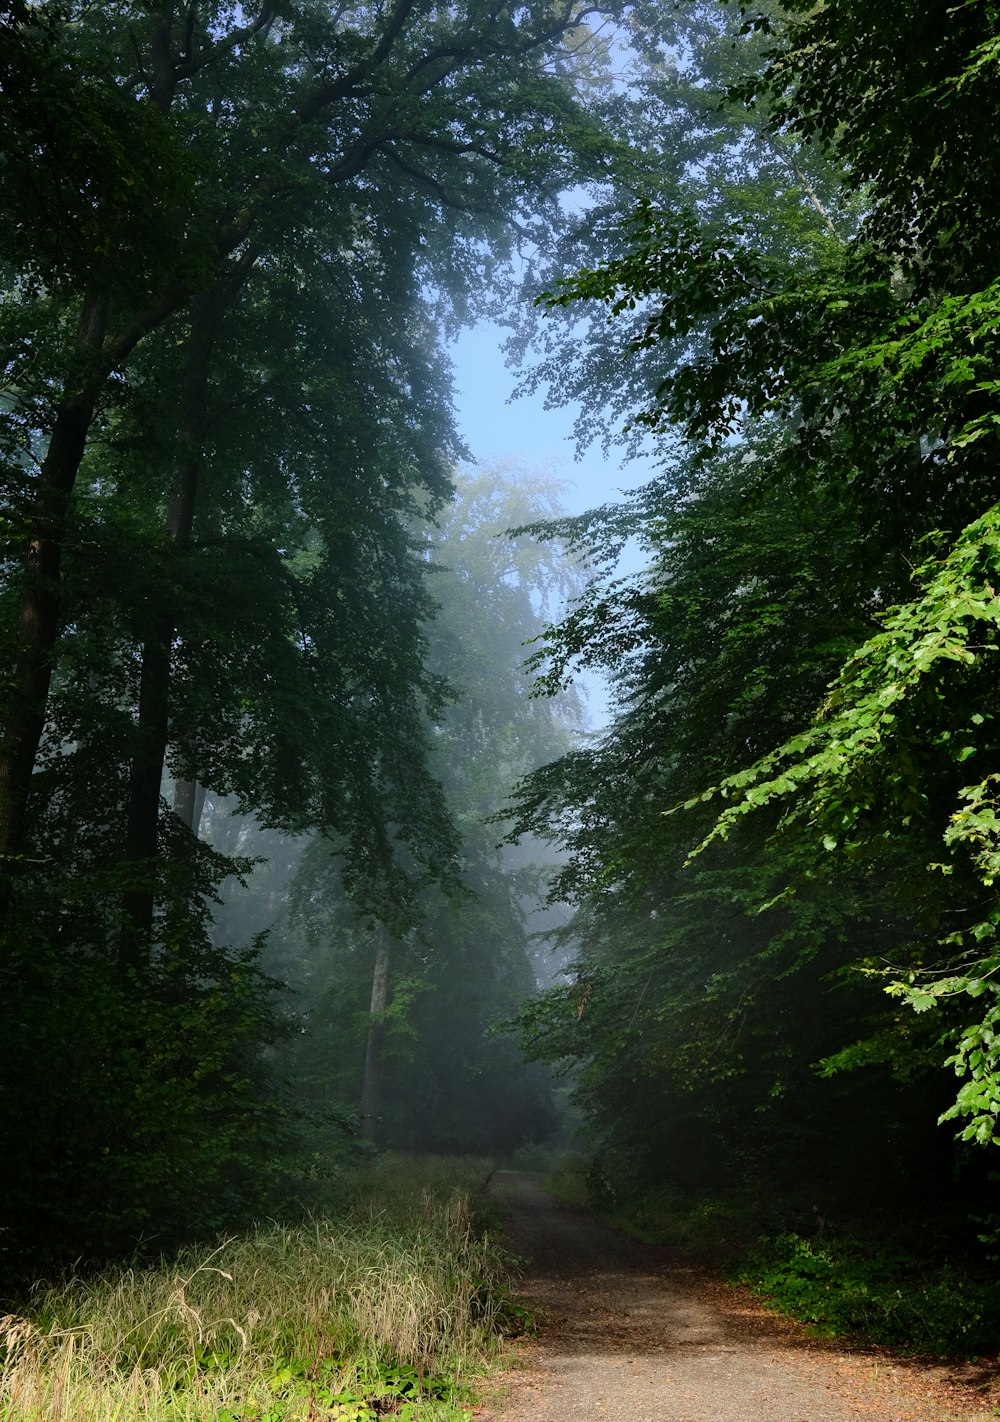 Un chemin de terre dans une forêt